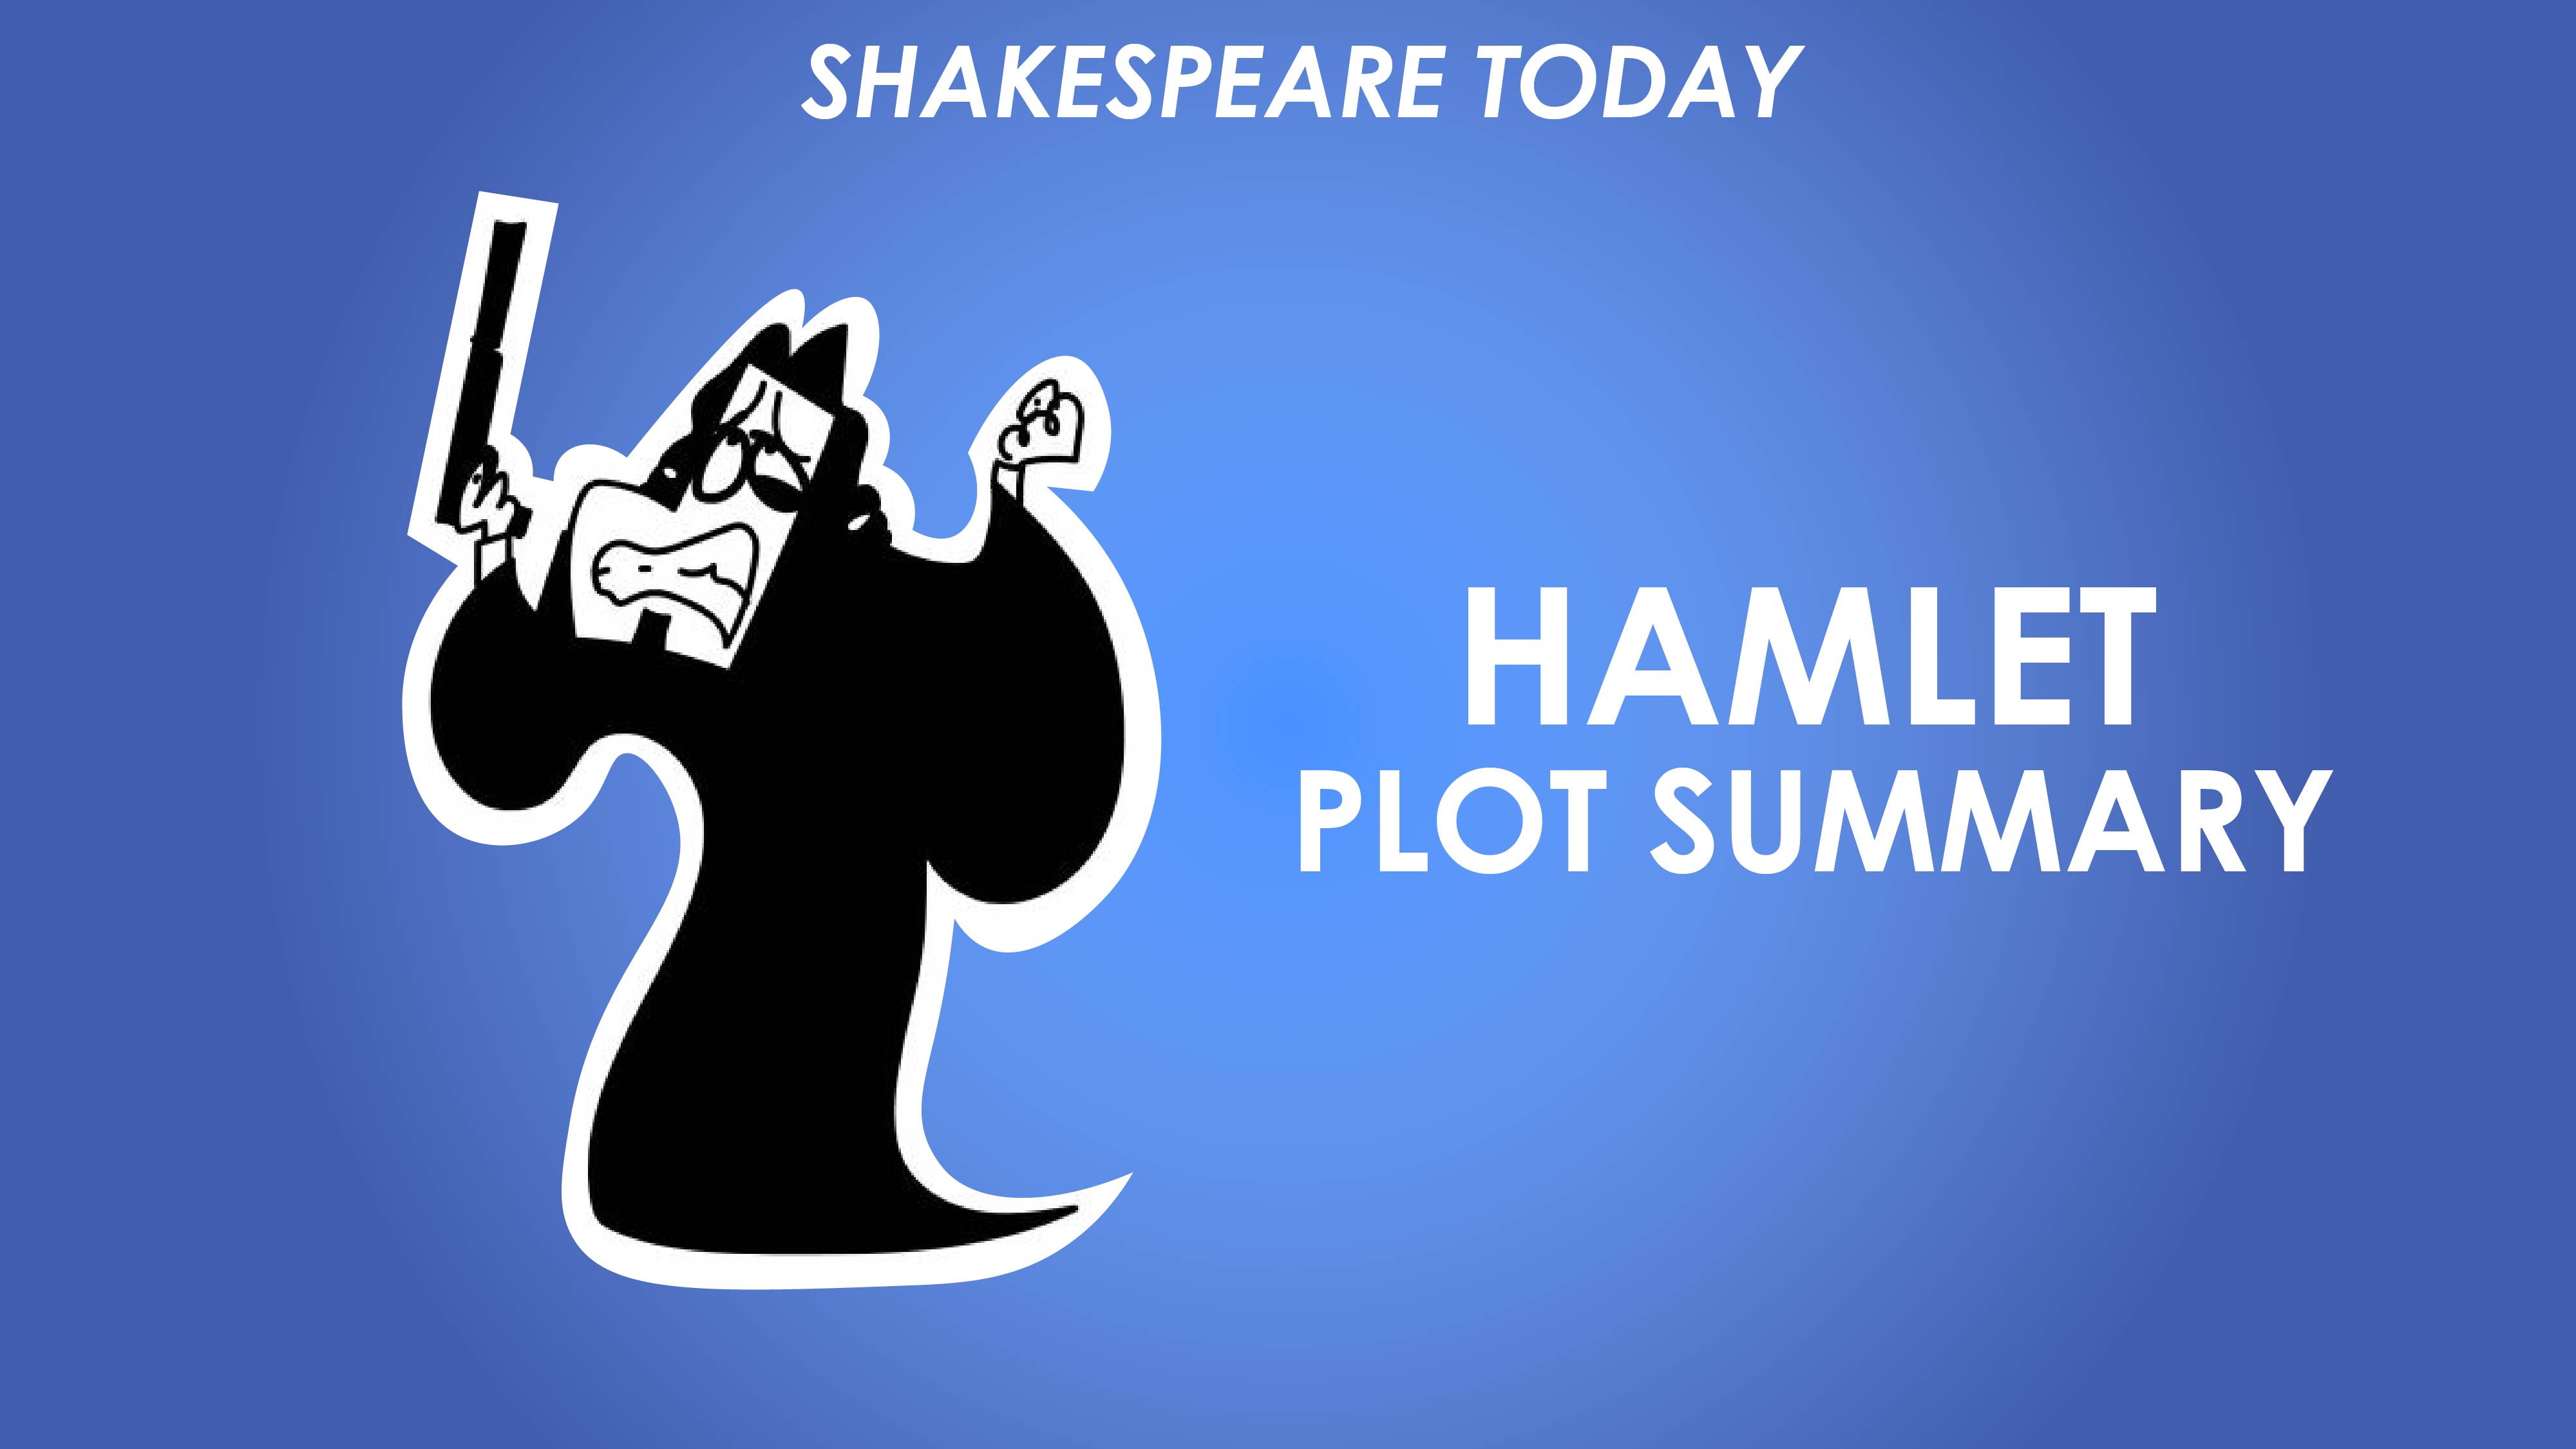 Hamlet Plot Summary - Shakespeare Today